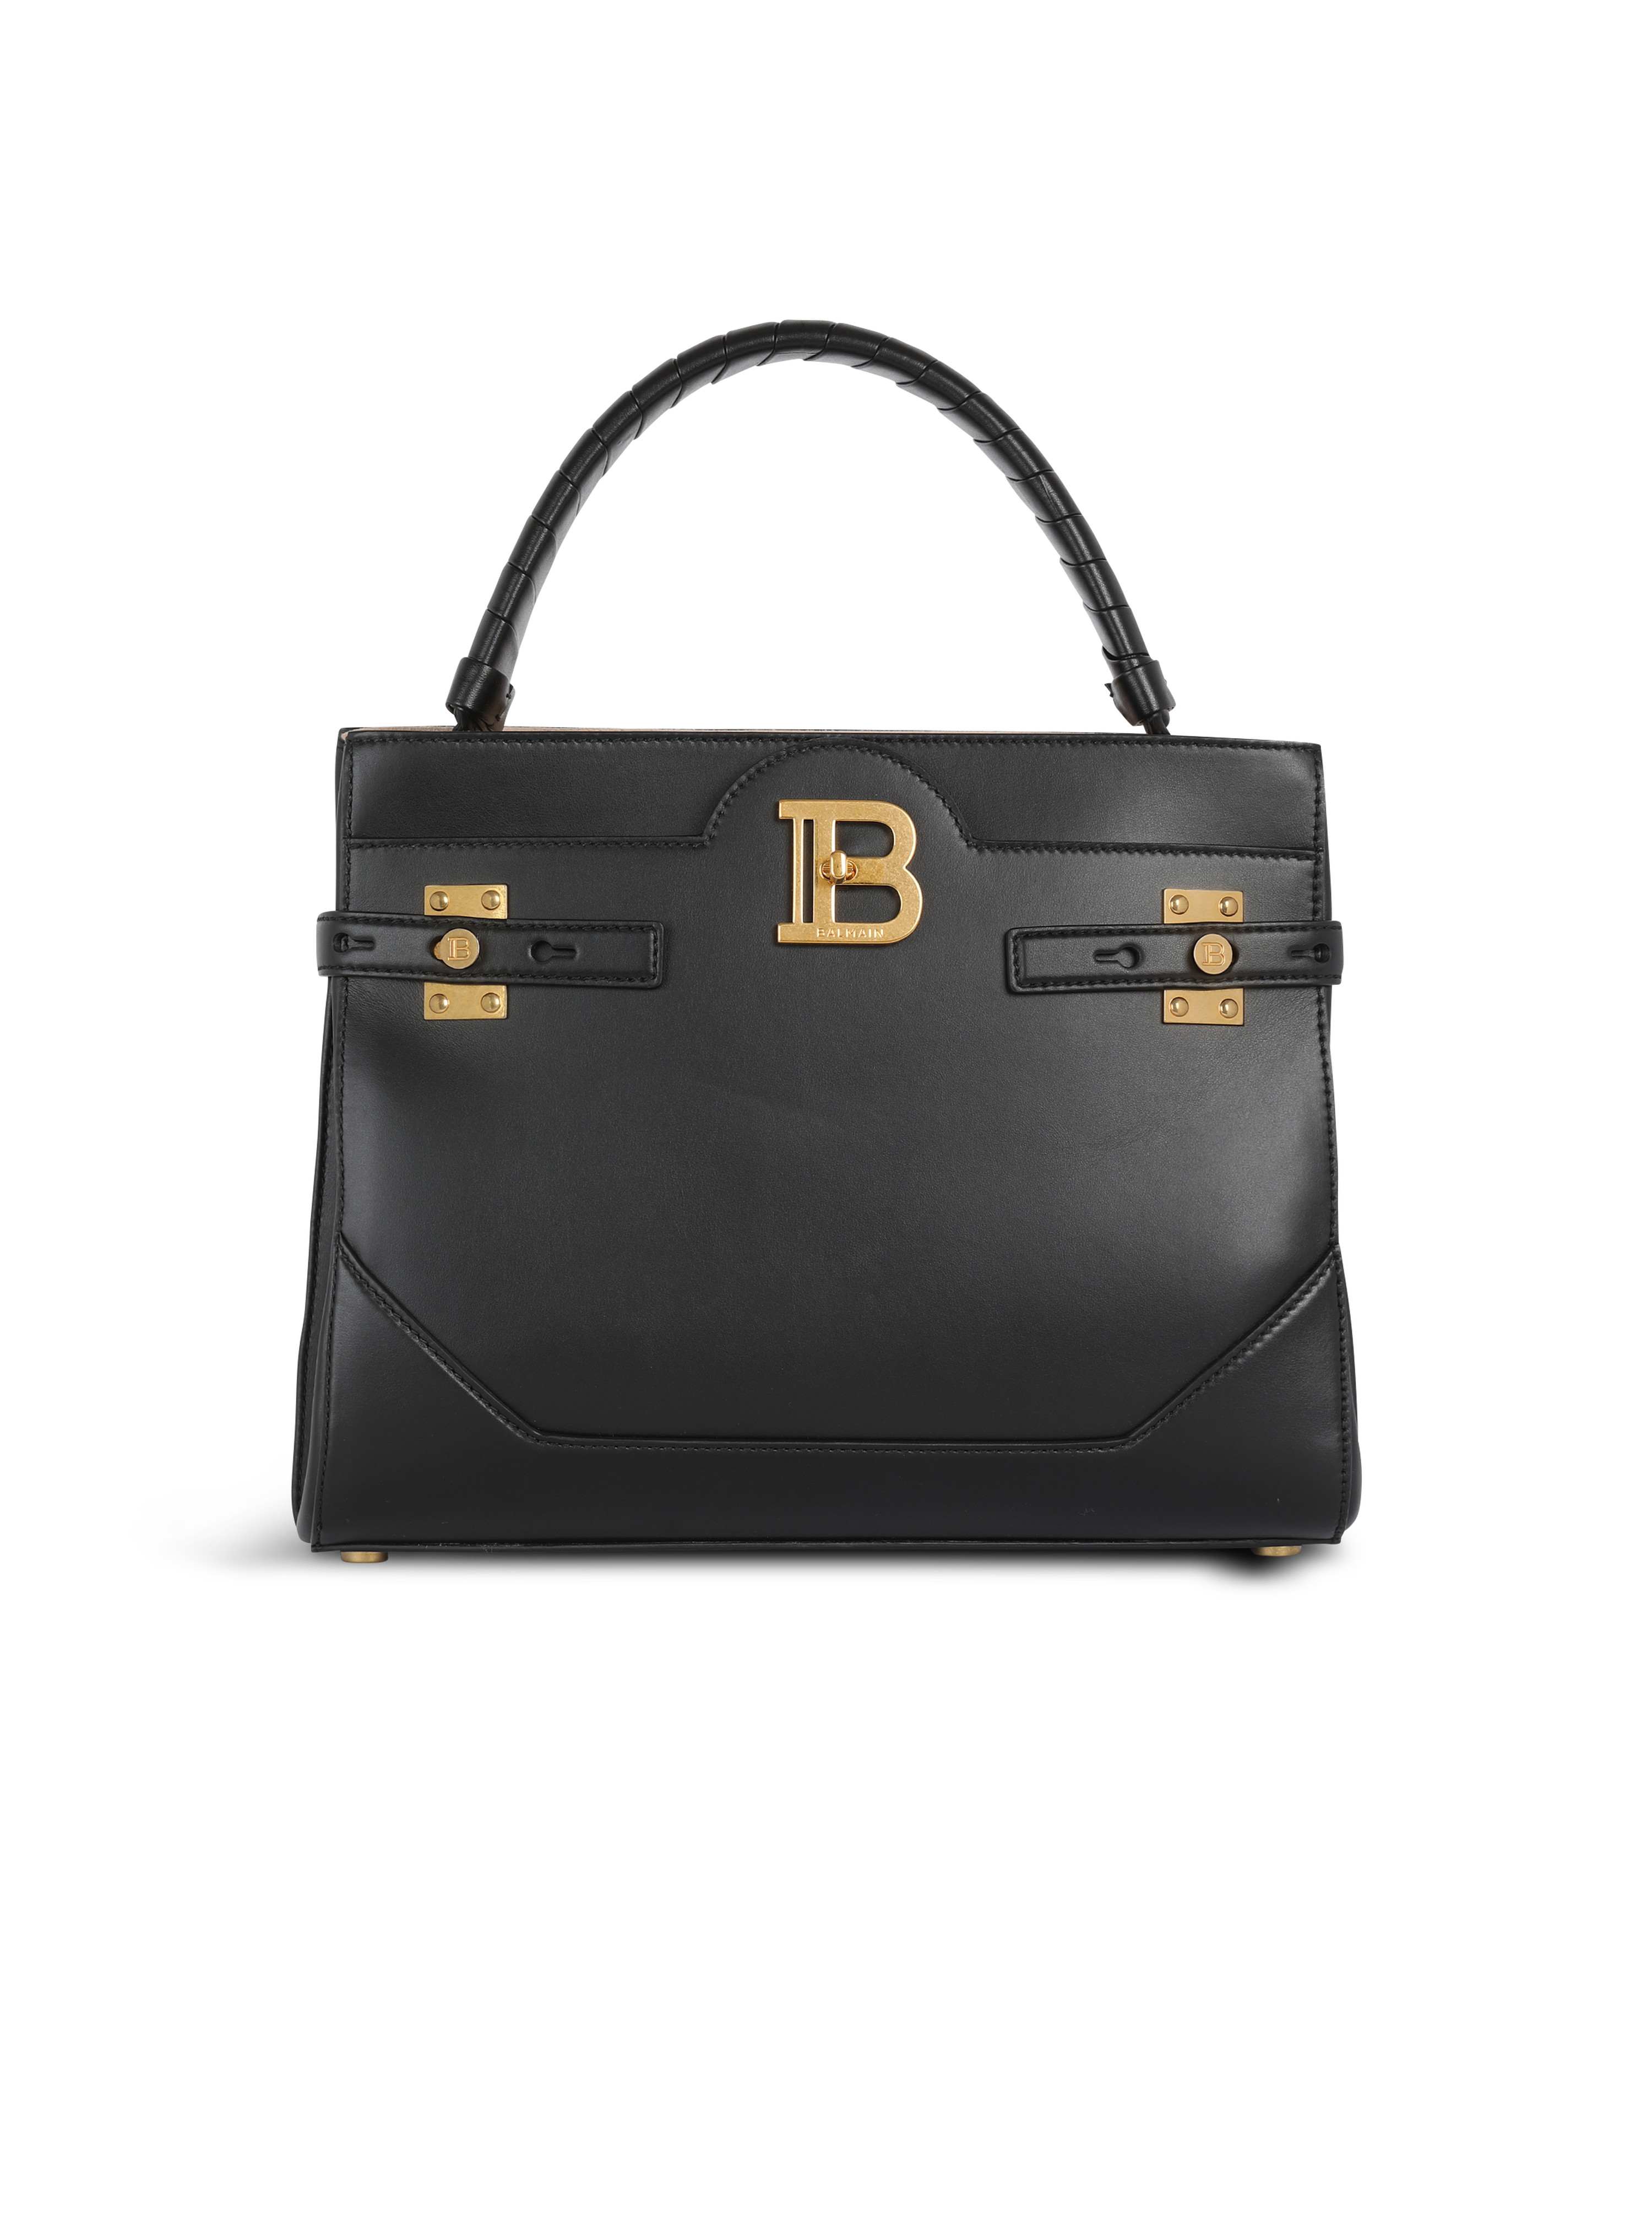 Leather B-Buzz Top Handle bag, black, hi-res